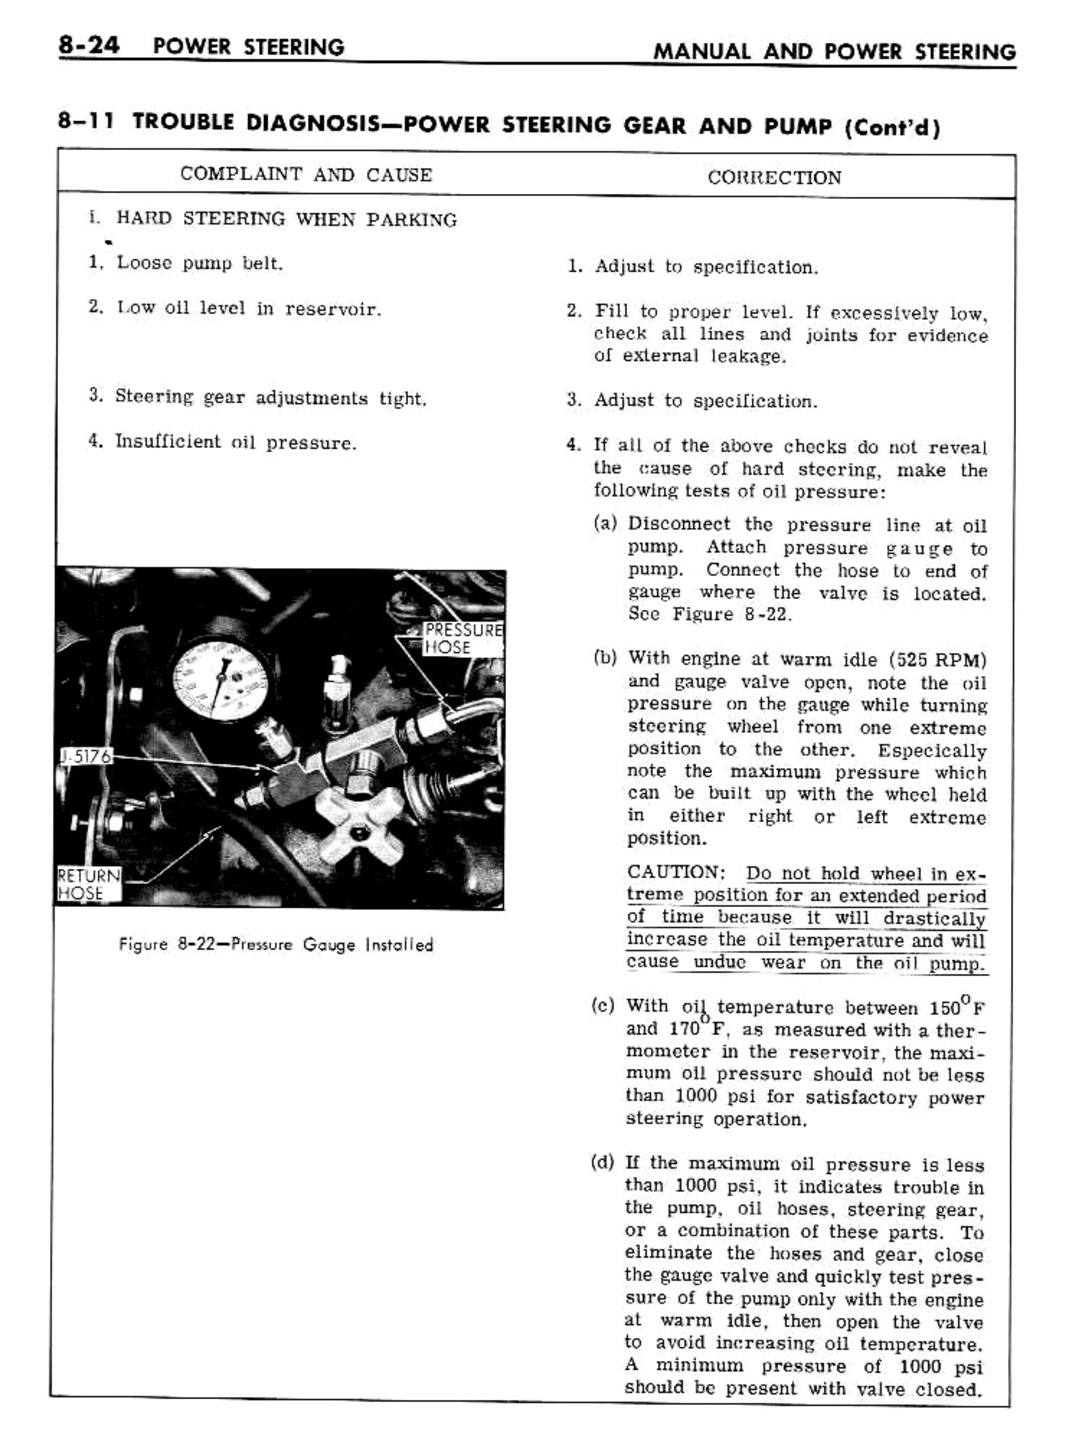 n_08 1961 Buick Shop Manual - Steering-024-024.jpg